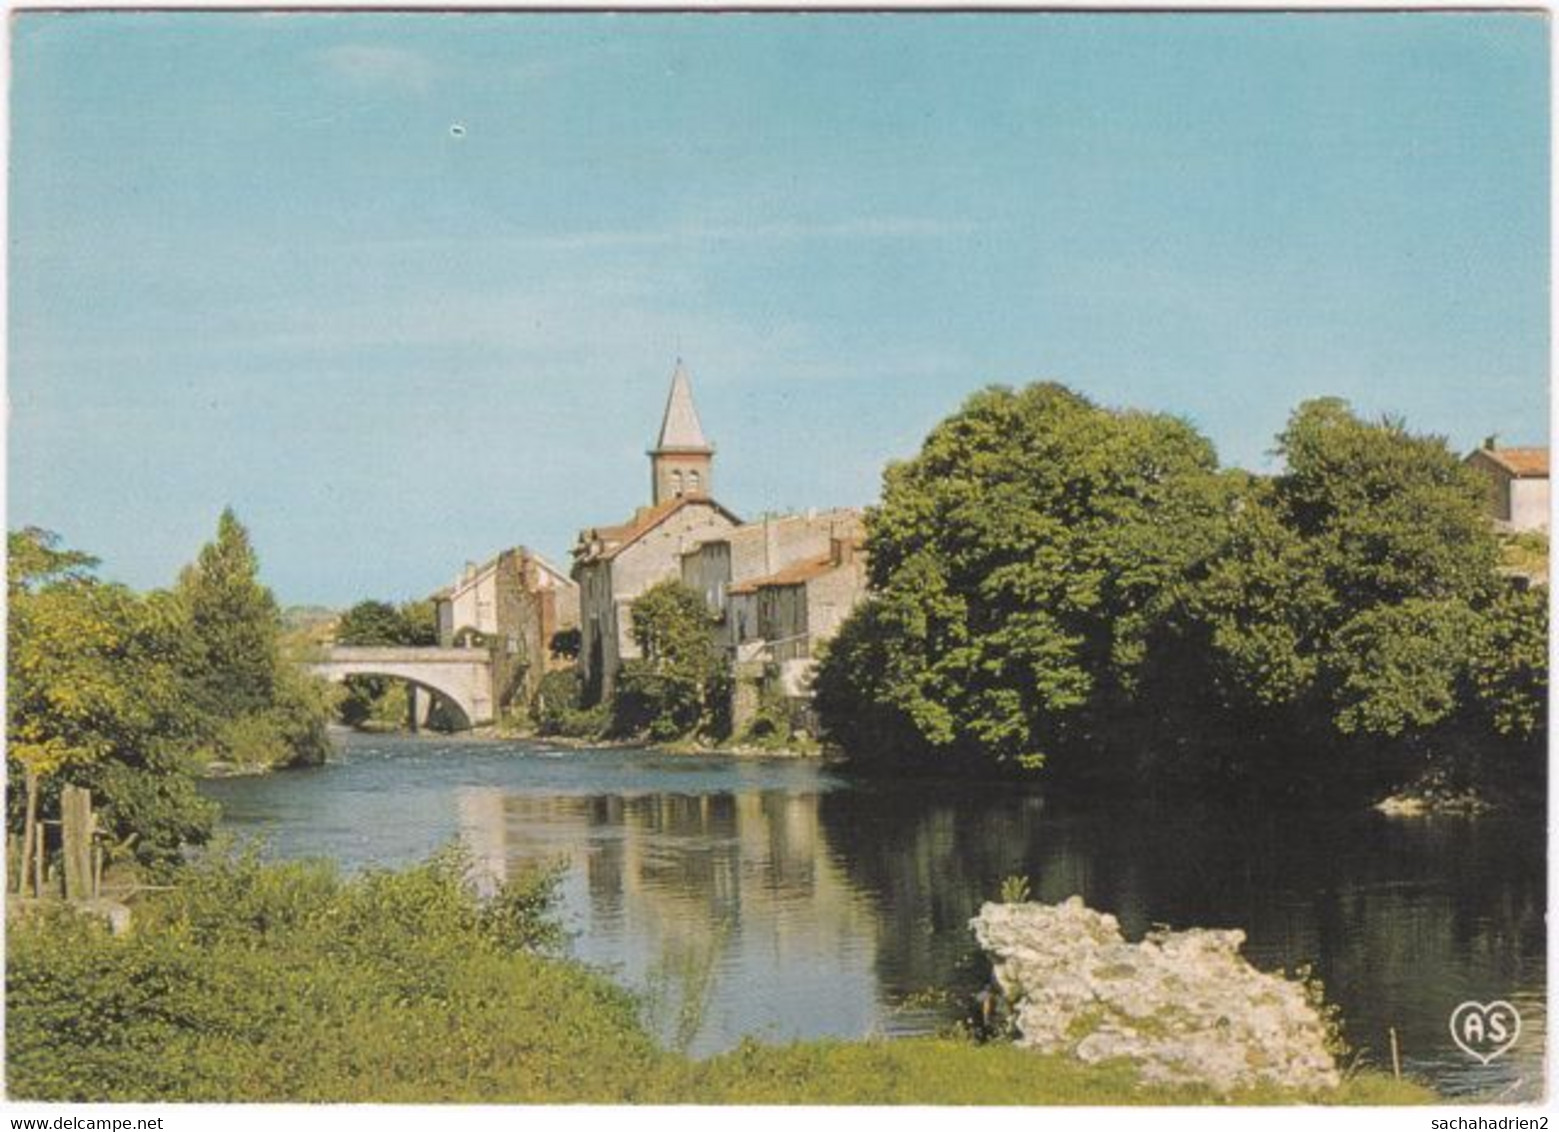 09. Gf. VARILHES. Pont Sur L'Ariège. 109 - Varilhes